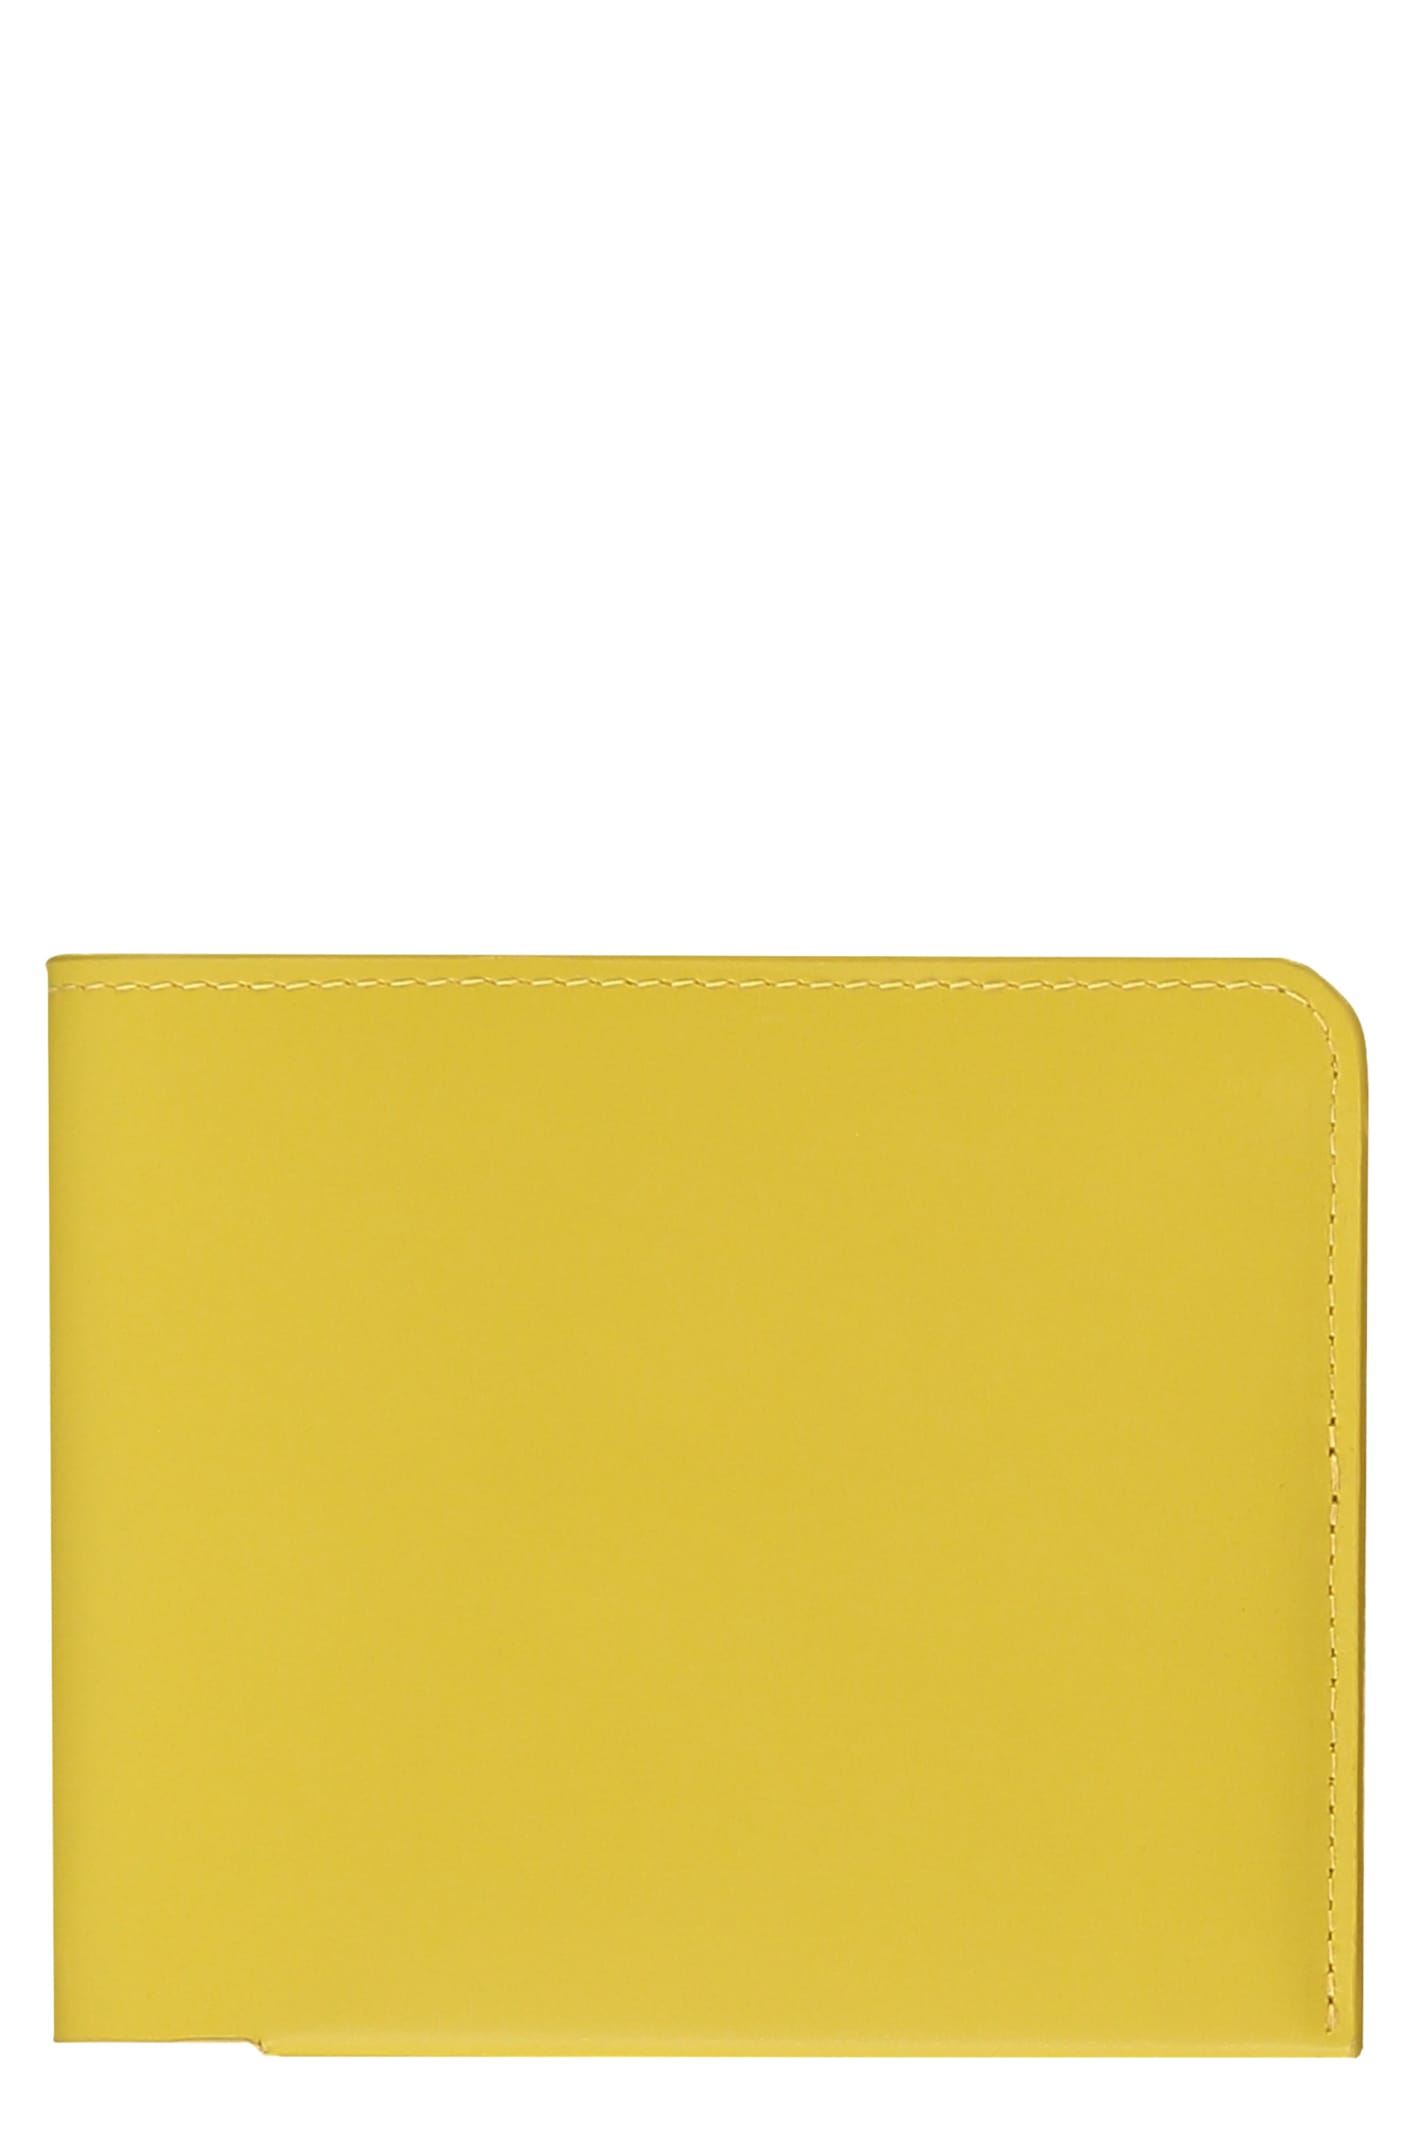 Dries Van Noten Leather Wallet In Yellow